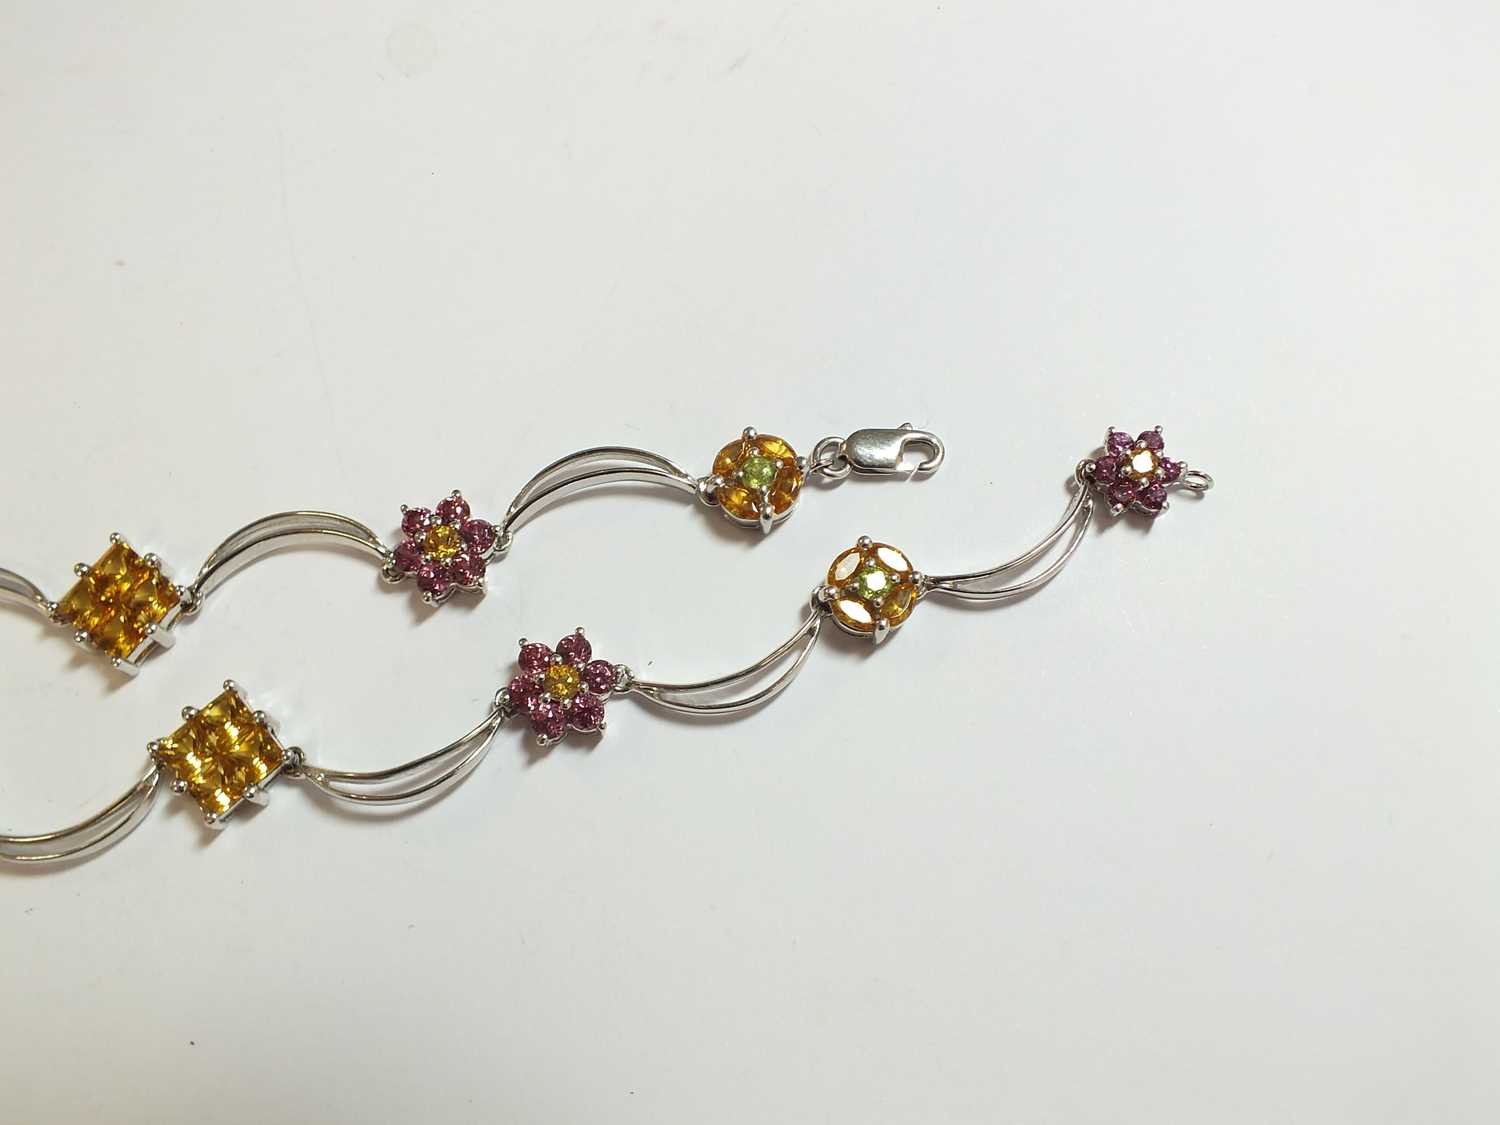 A multi-gem set floral necklace - Image 3 of 12